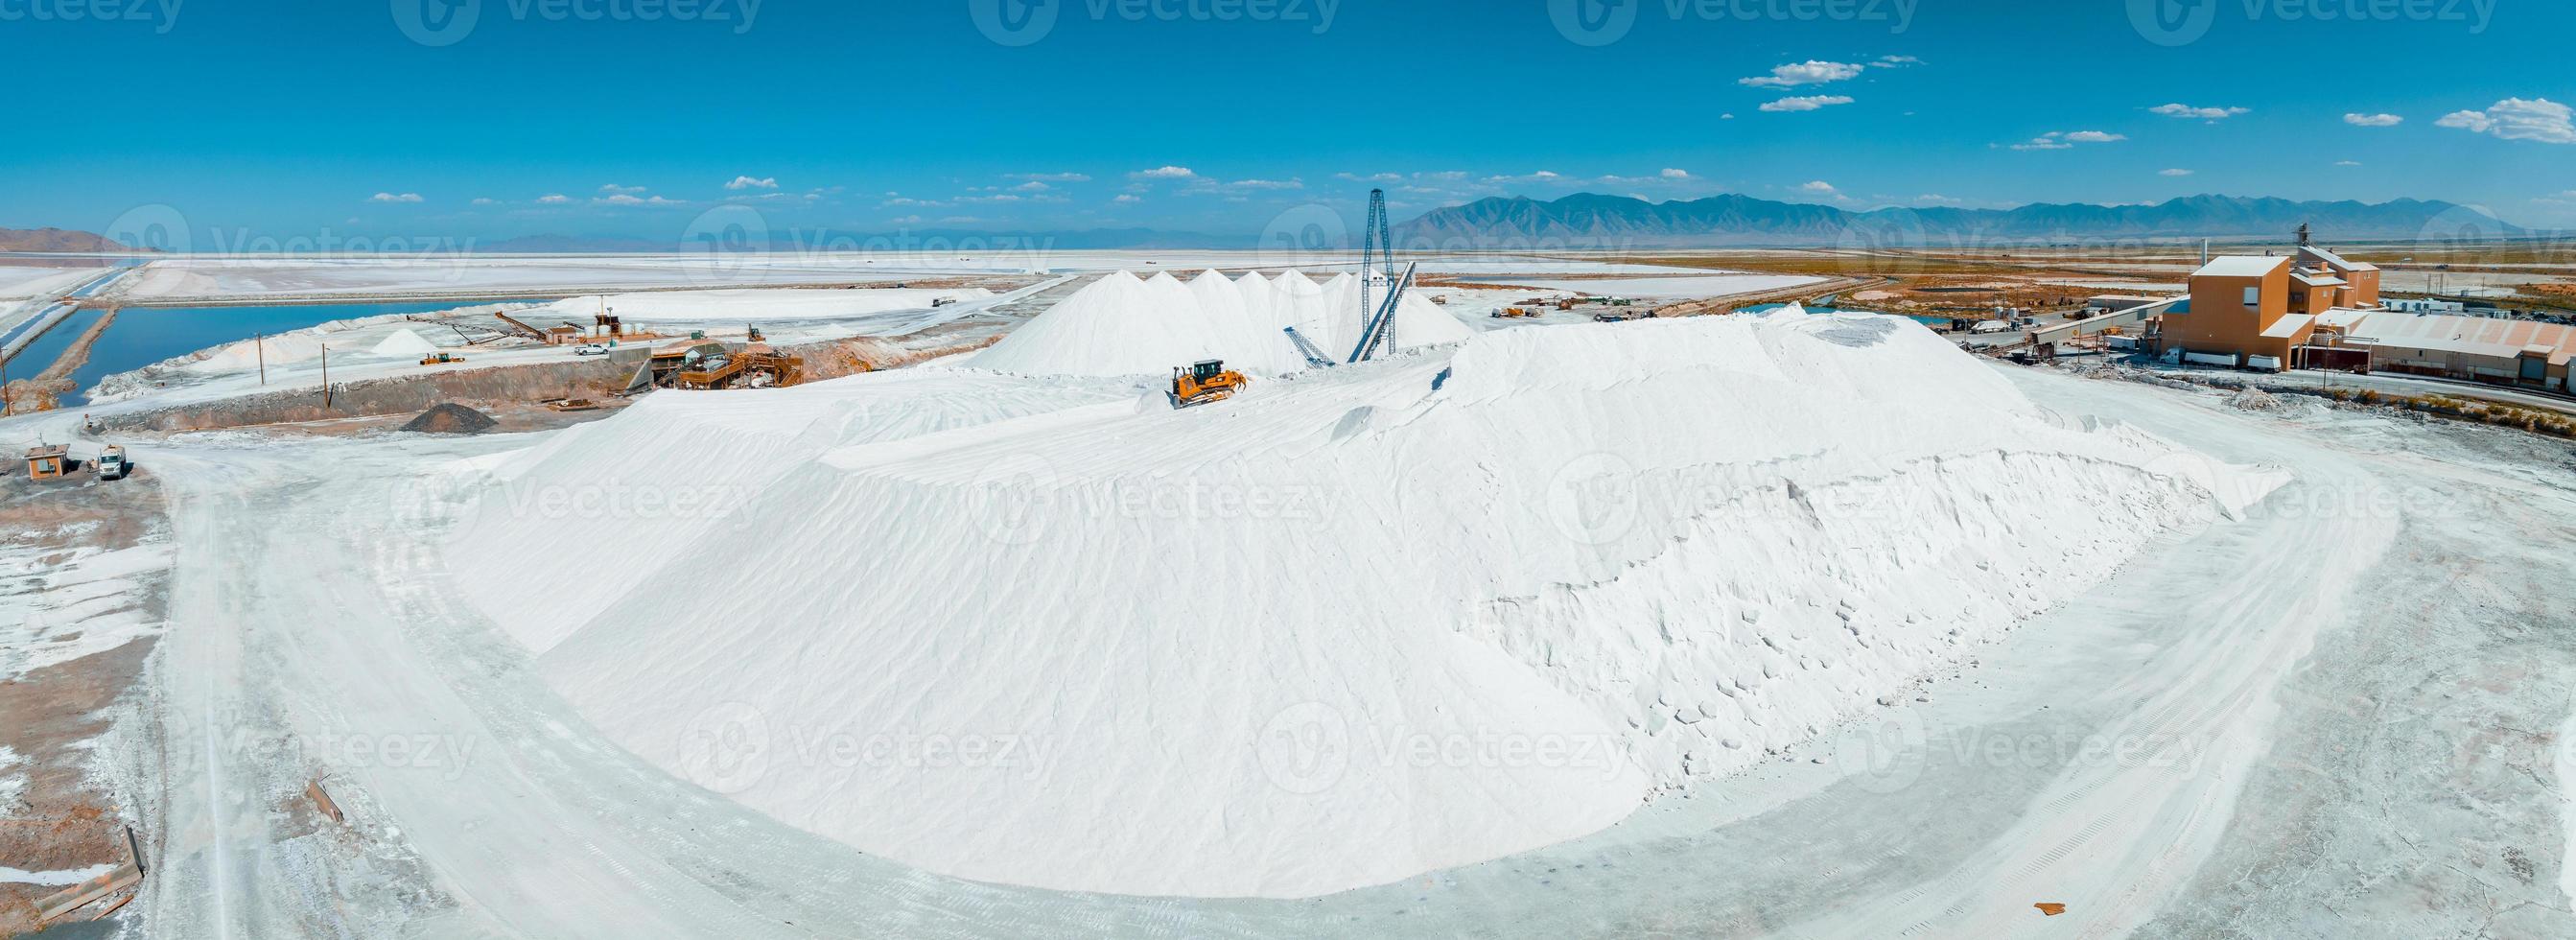 zout meer stad, Utah landschap met woestijn zout mijnbouw fabriek foto